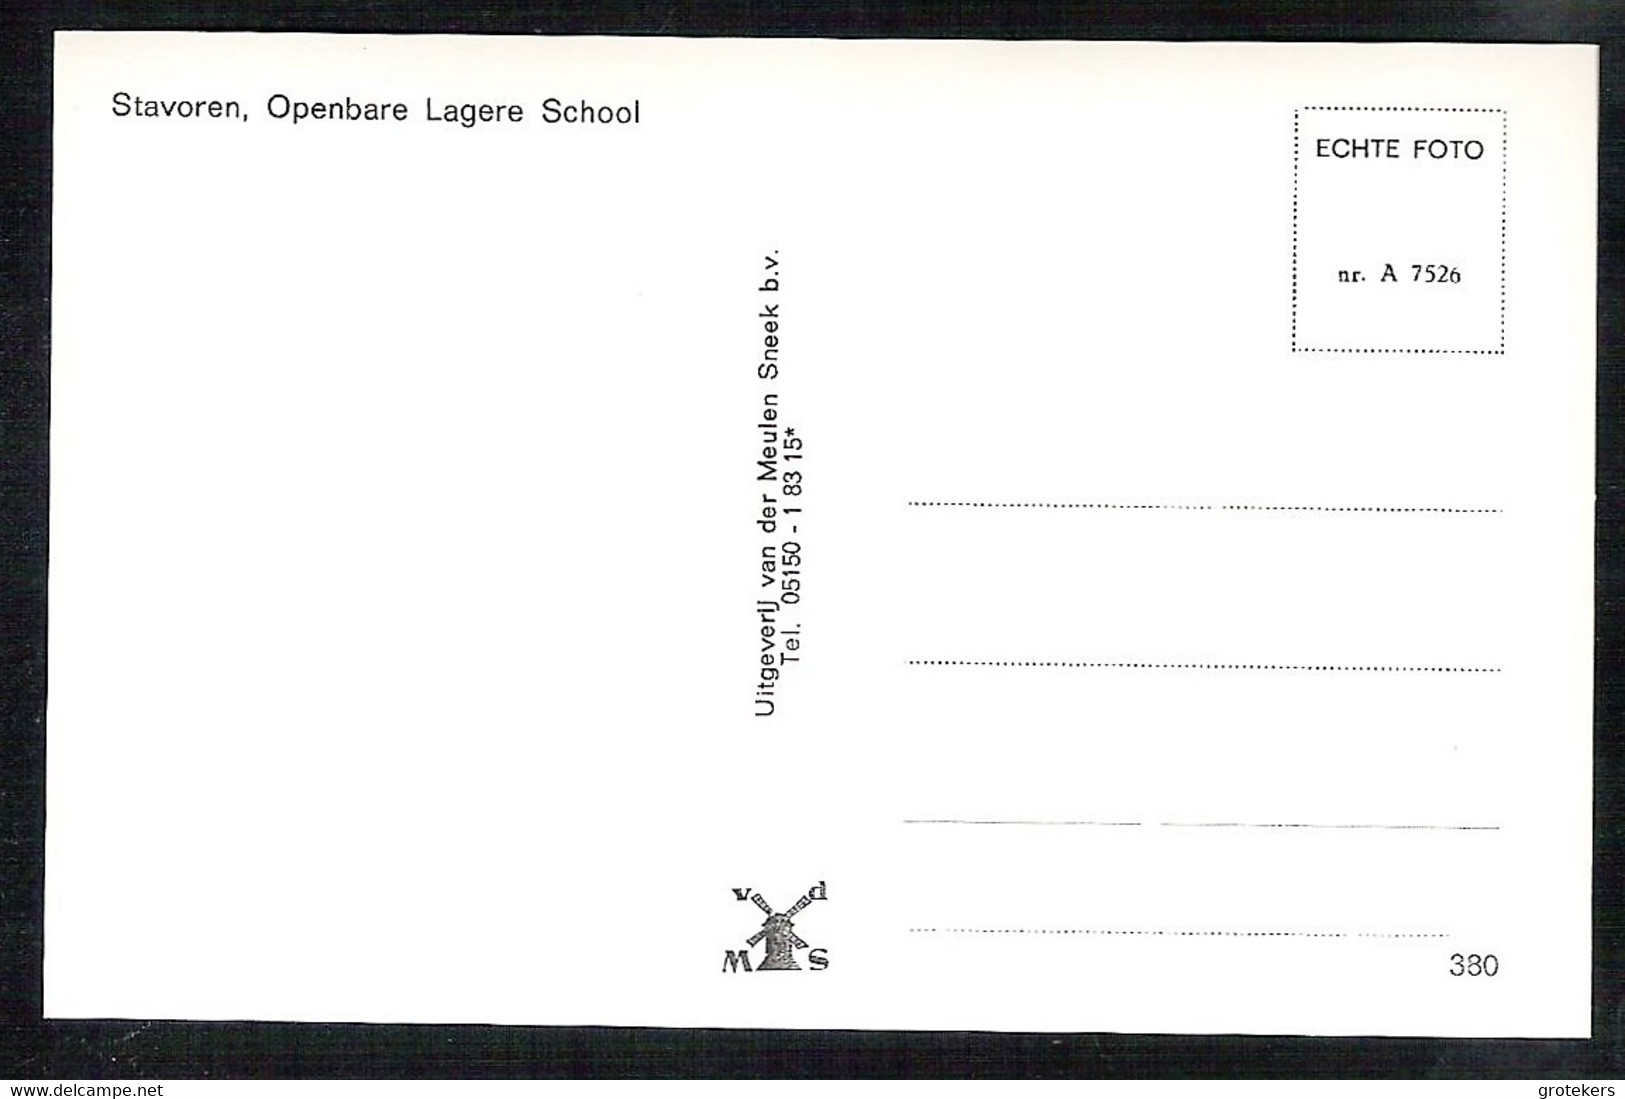 STAVOREN Oud, Openbare Lagere School Echte Foto 1980 - Stavoren